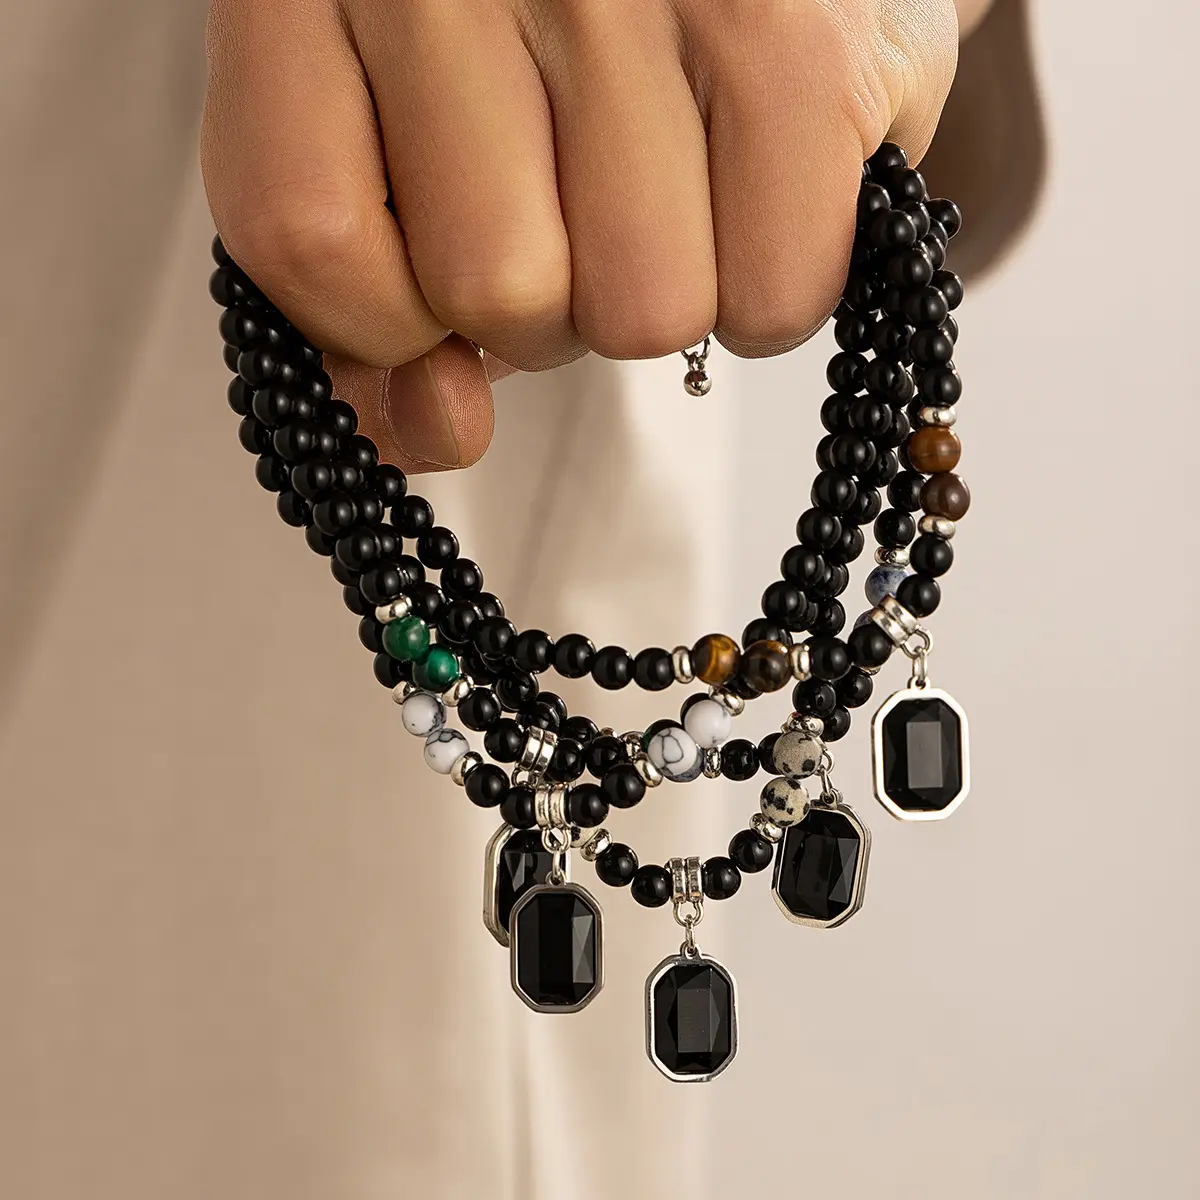 Collare de colgante cuadrado con cuentas negra collare de accesorios de moda para hombres collare de joyas de moda regalo para